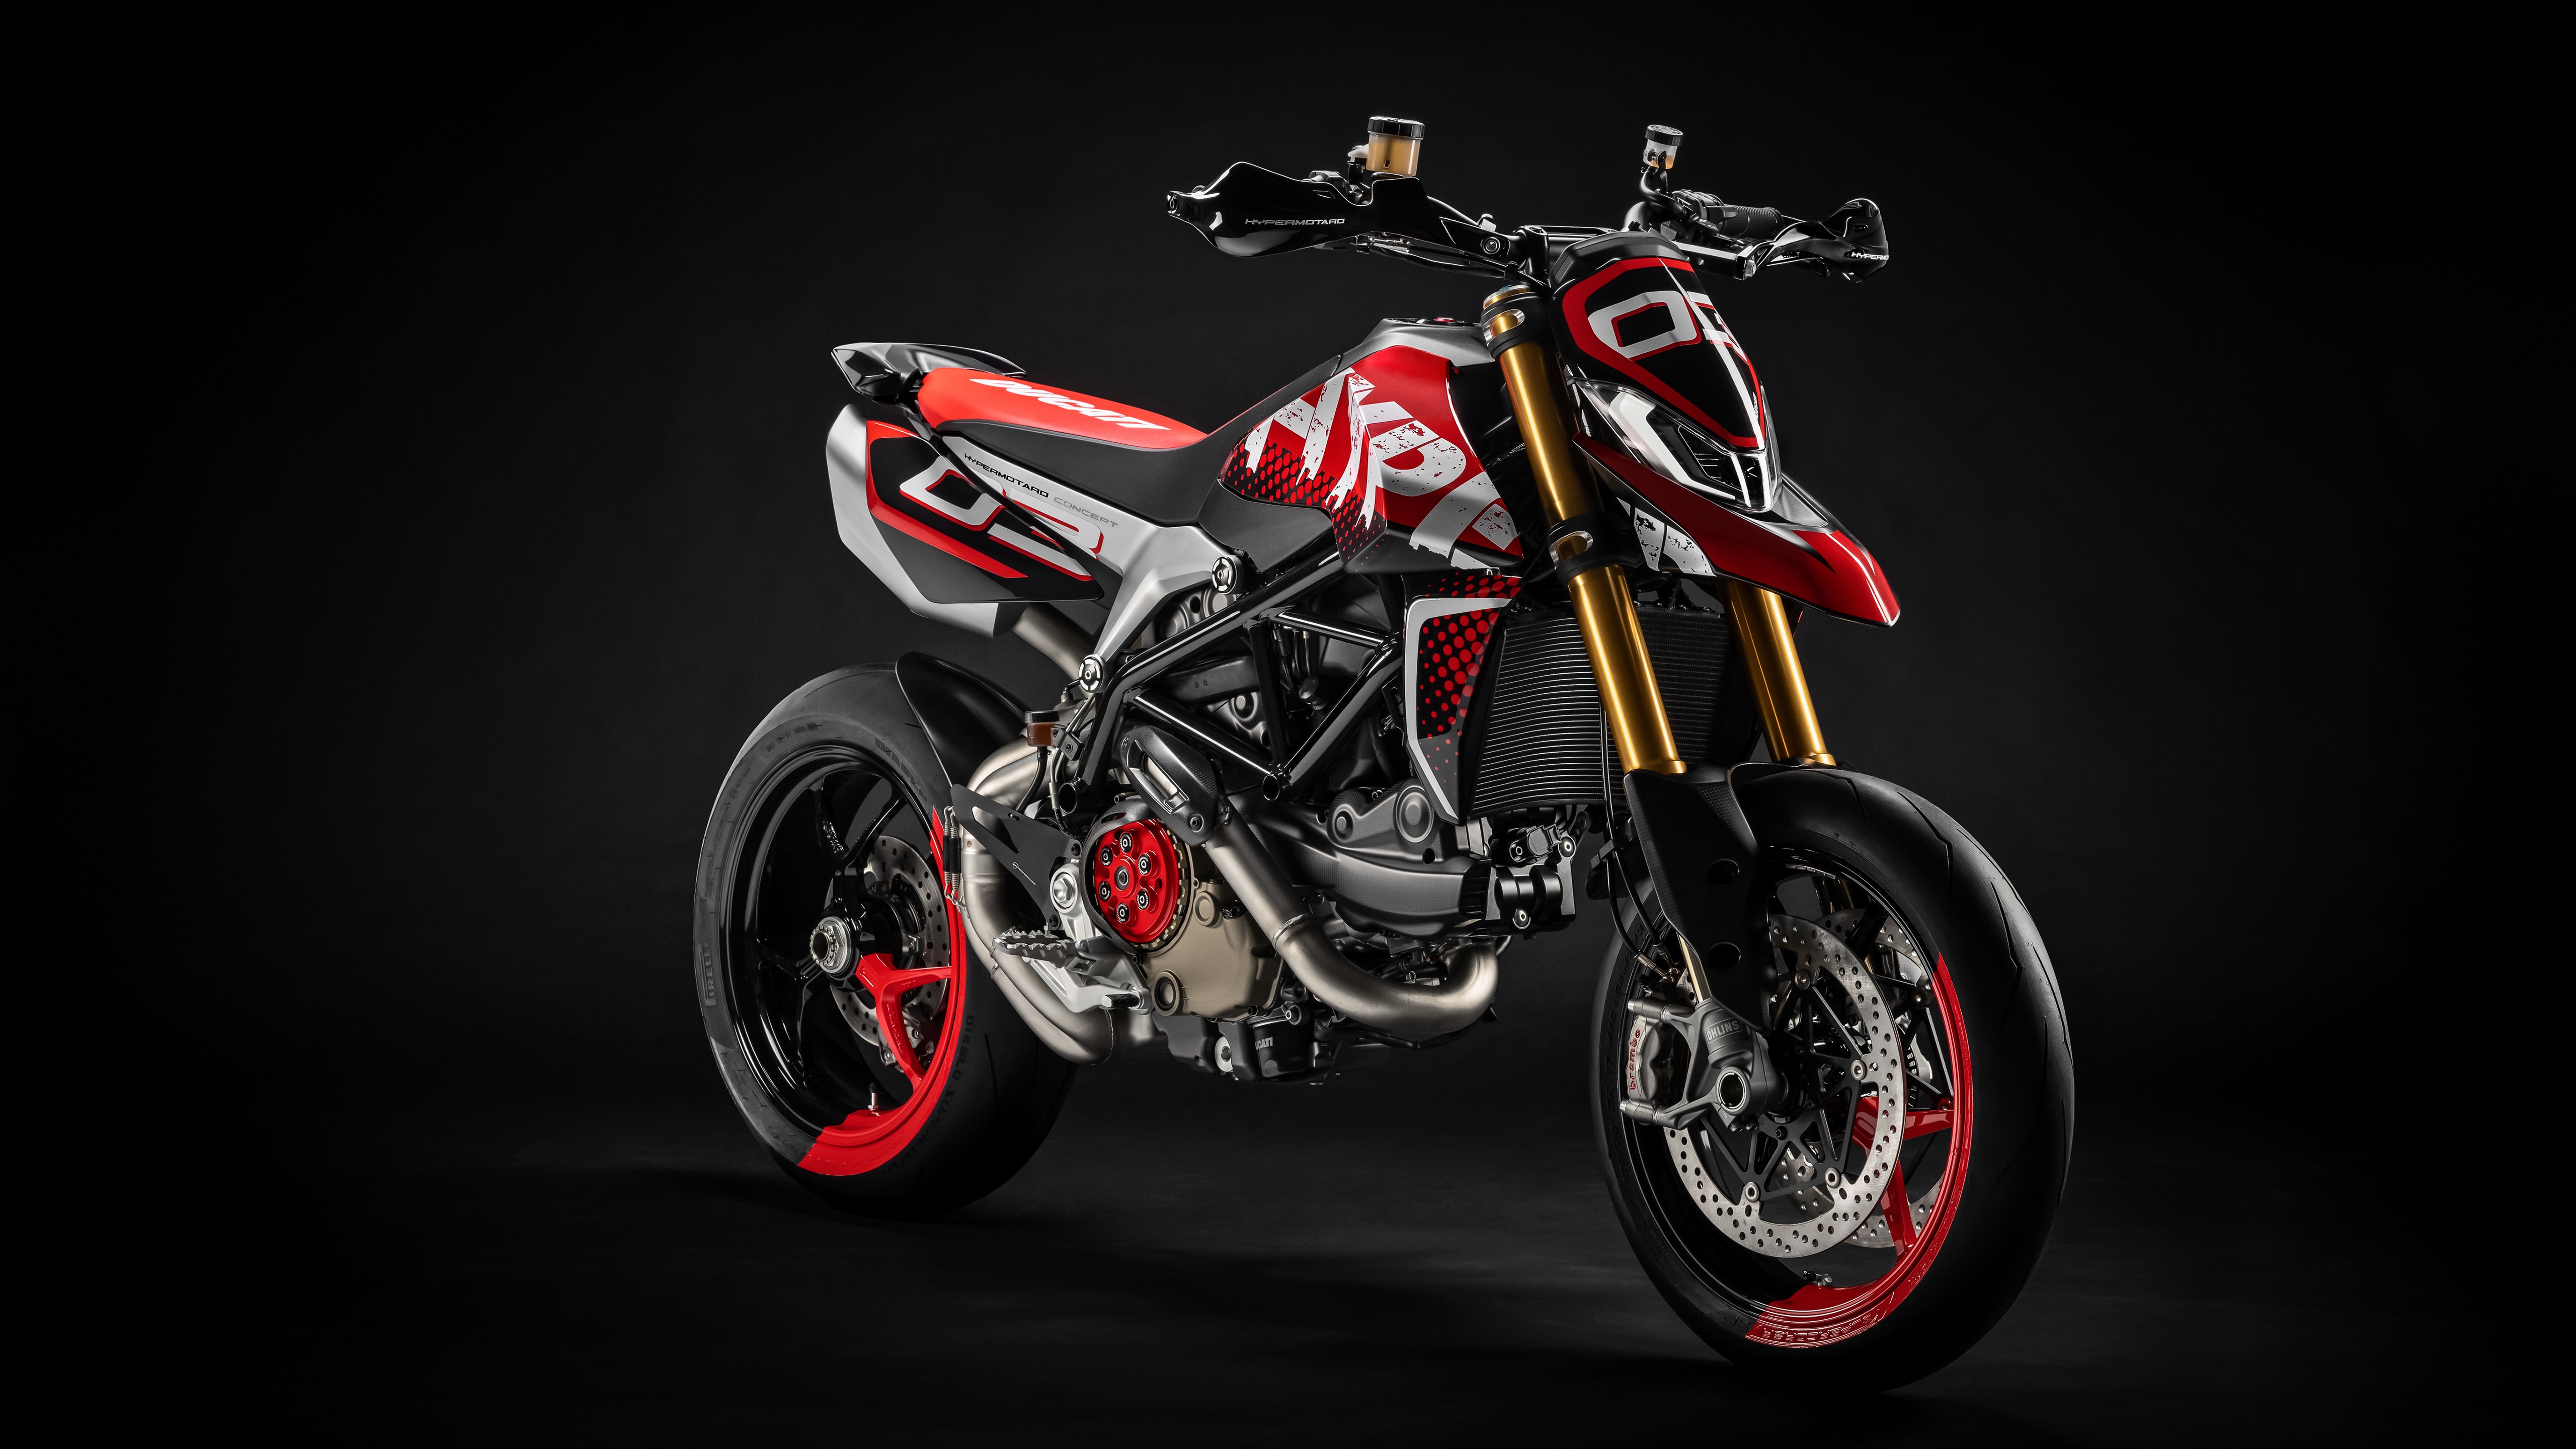 5k Wallpaper Of 2019 Ducati Hypermotard 950 Concept - Ducati Hypermotard 950 Concept , HD Wallpaper & Backgrounds